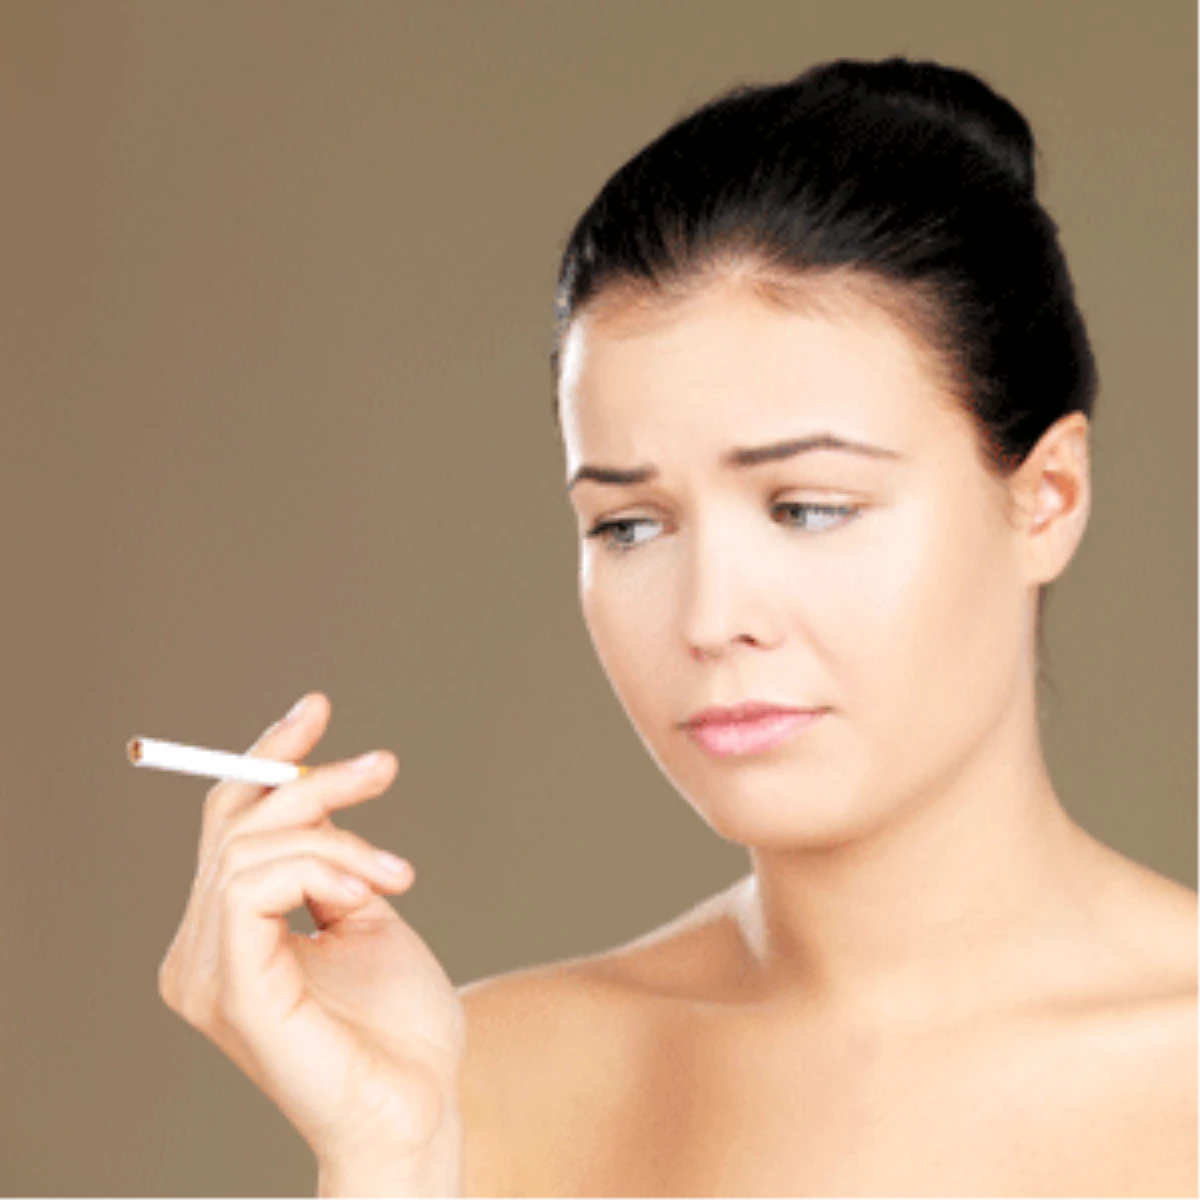 Sigara Bağımlılığı "Bir Taneden Bir Şey Olmaz" Demekle Başlıyor